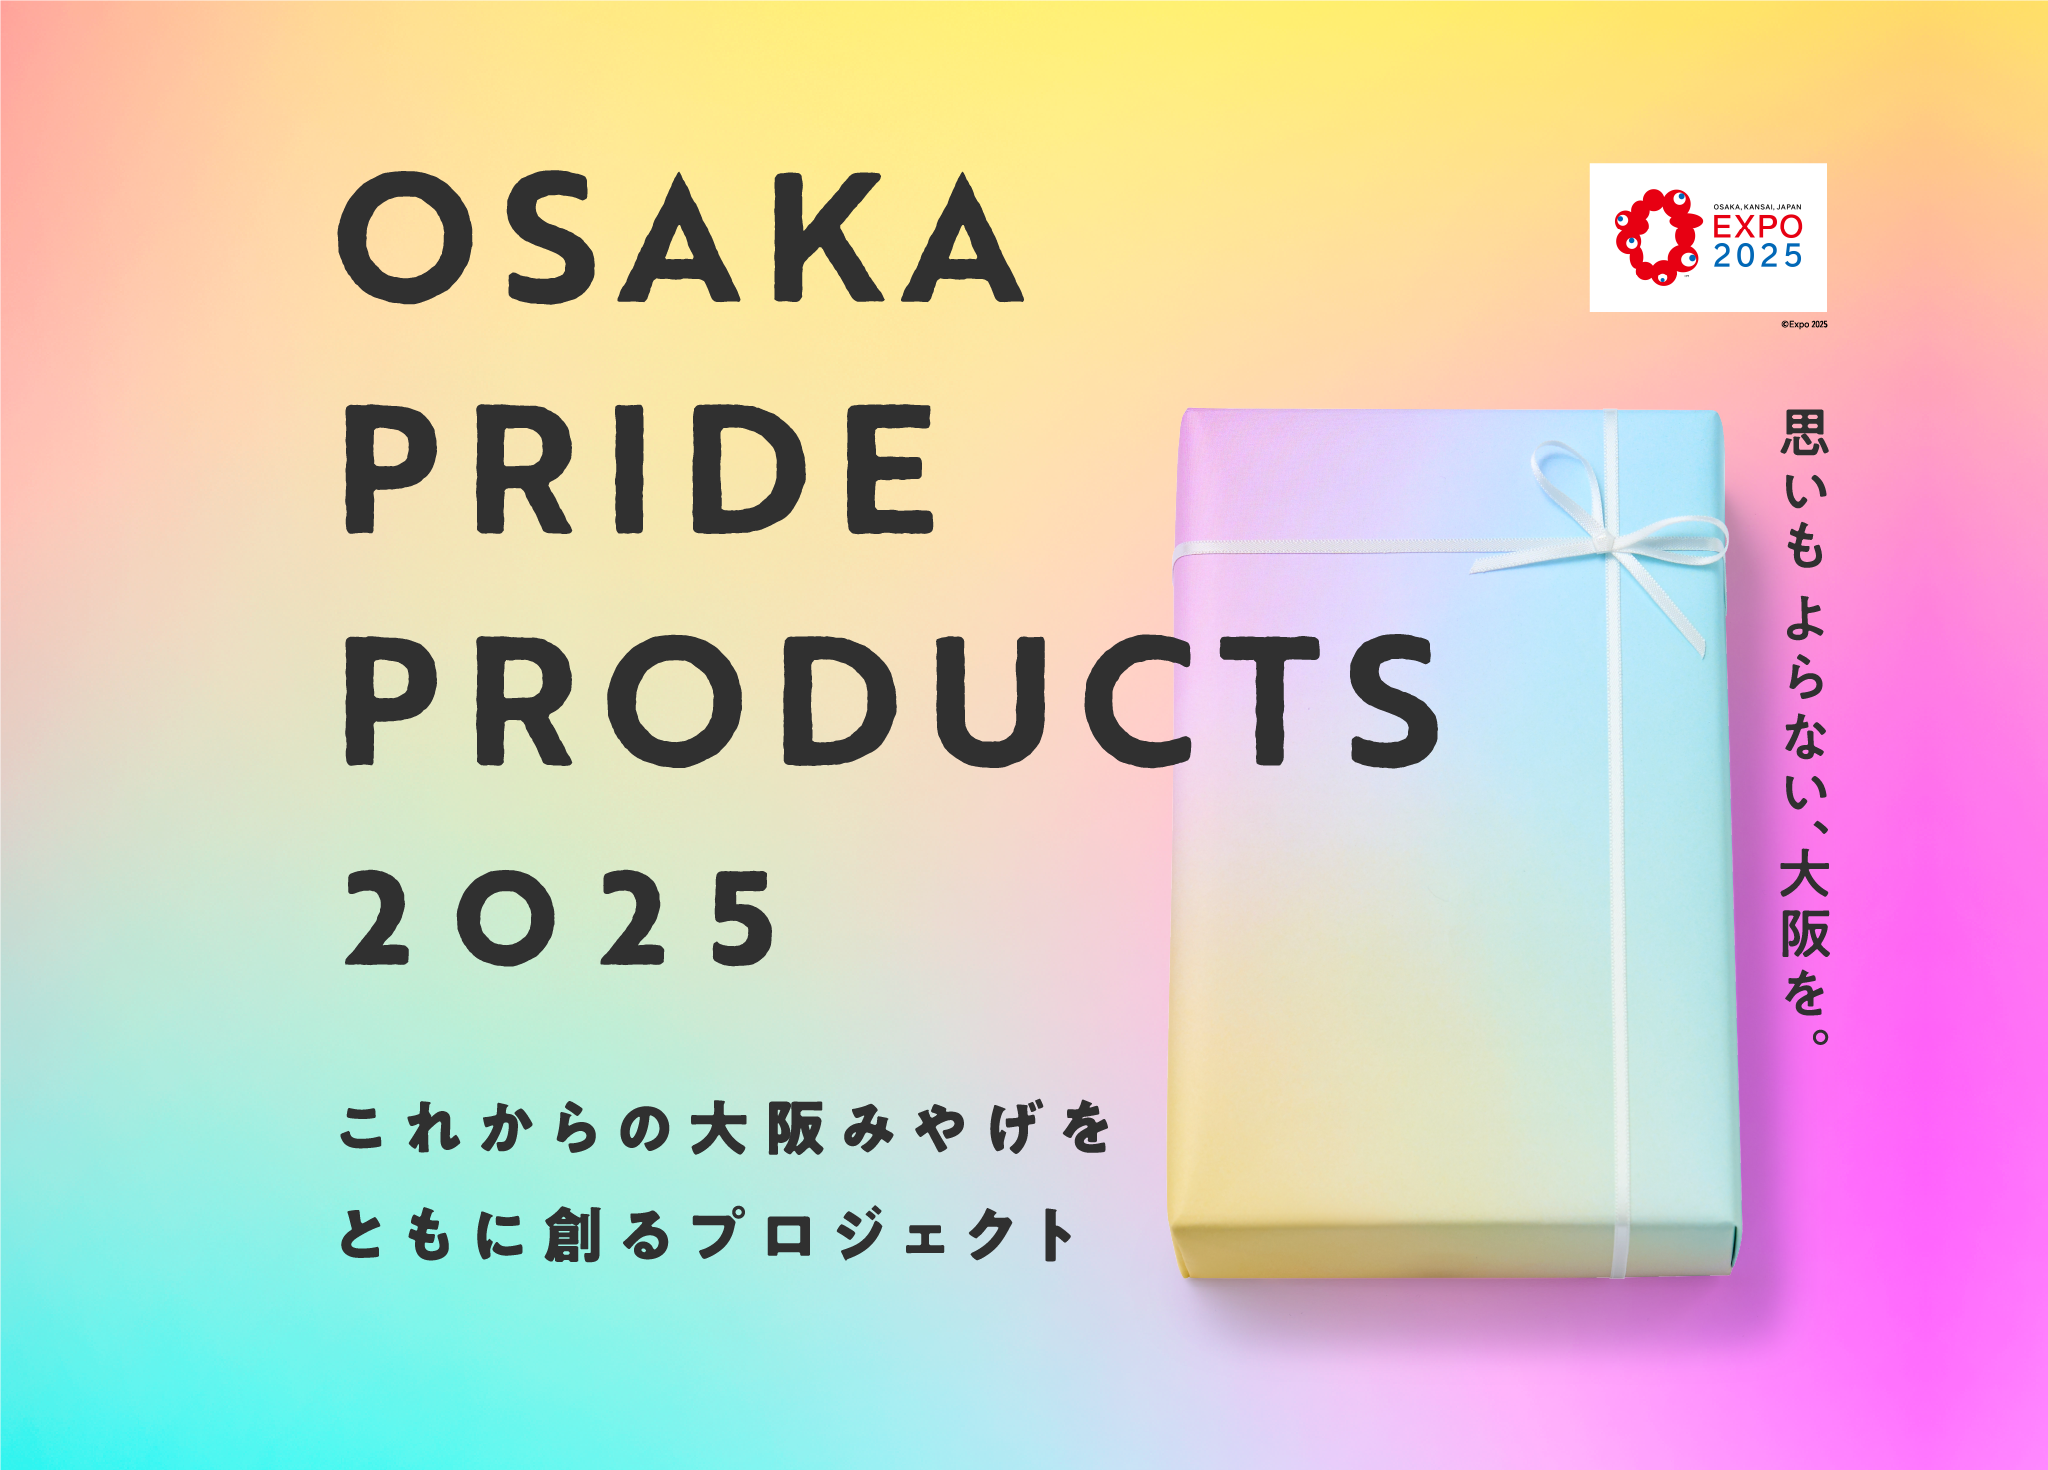 大阪代表商品プロジェクト OSAKA PRIDE PRODUCTS 2025 これからの大阪みやげをともに創るプロジェクト